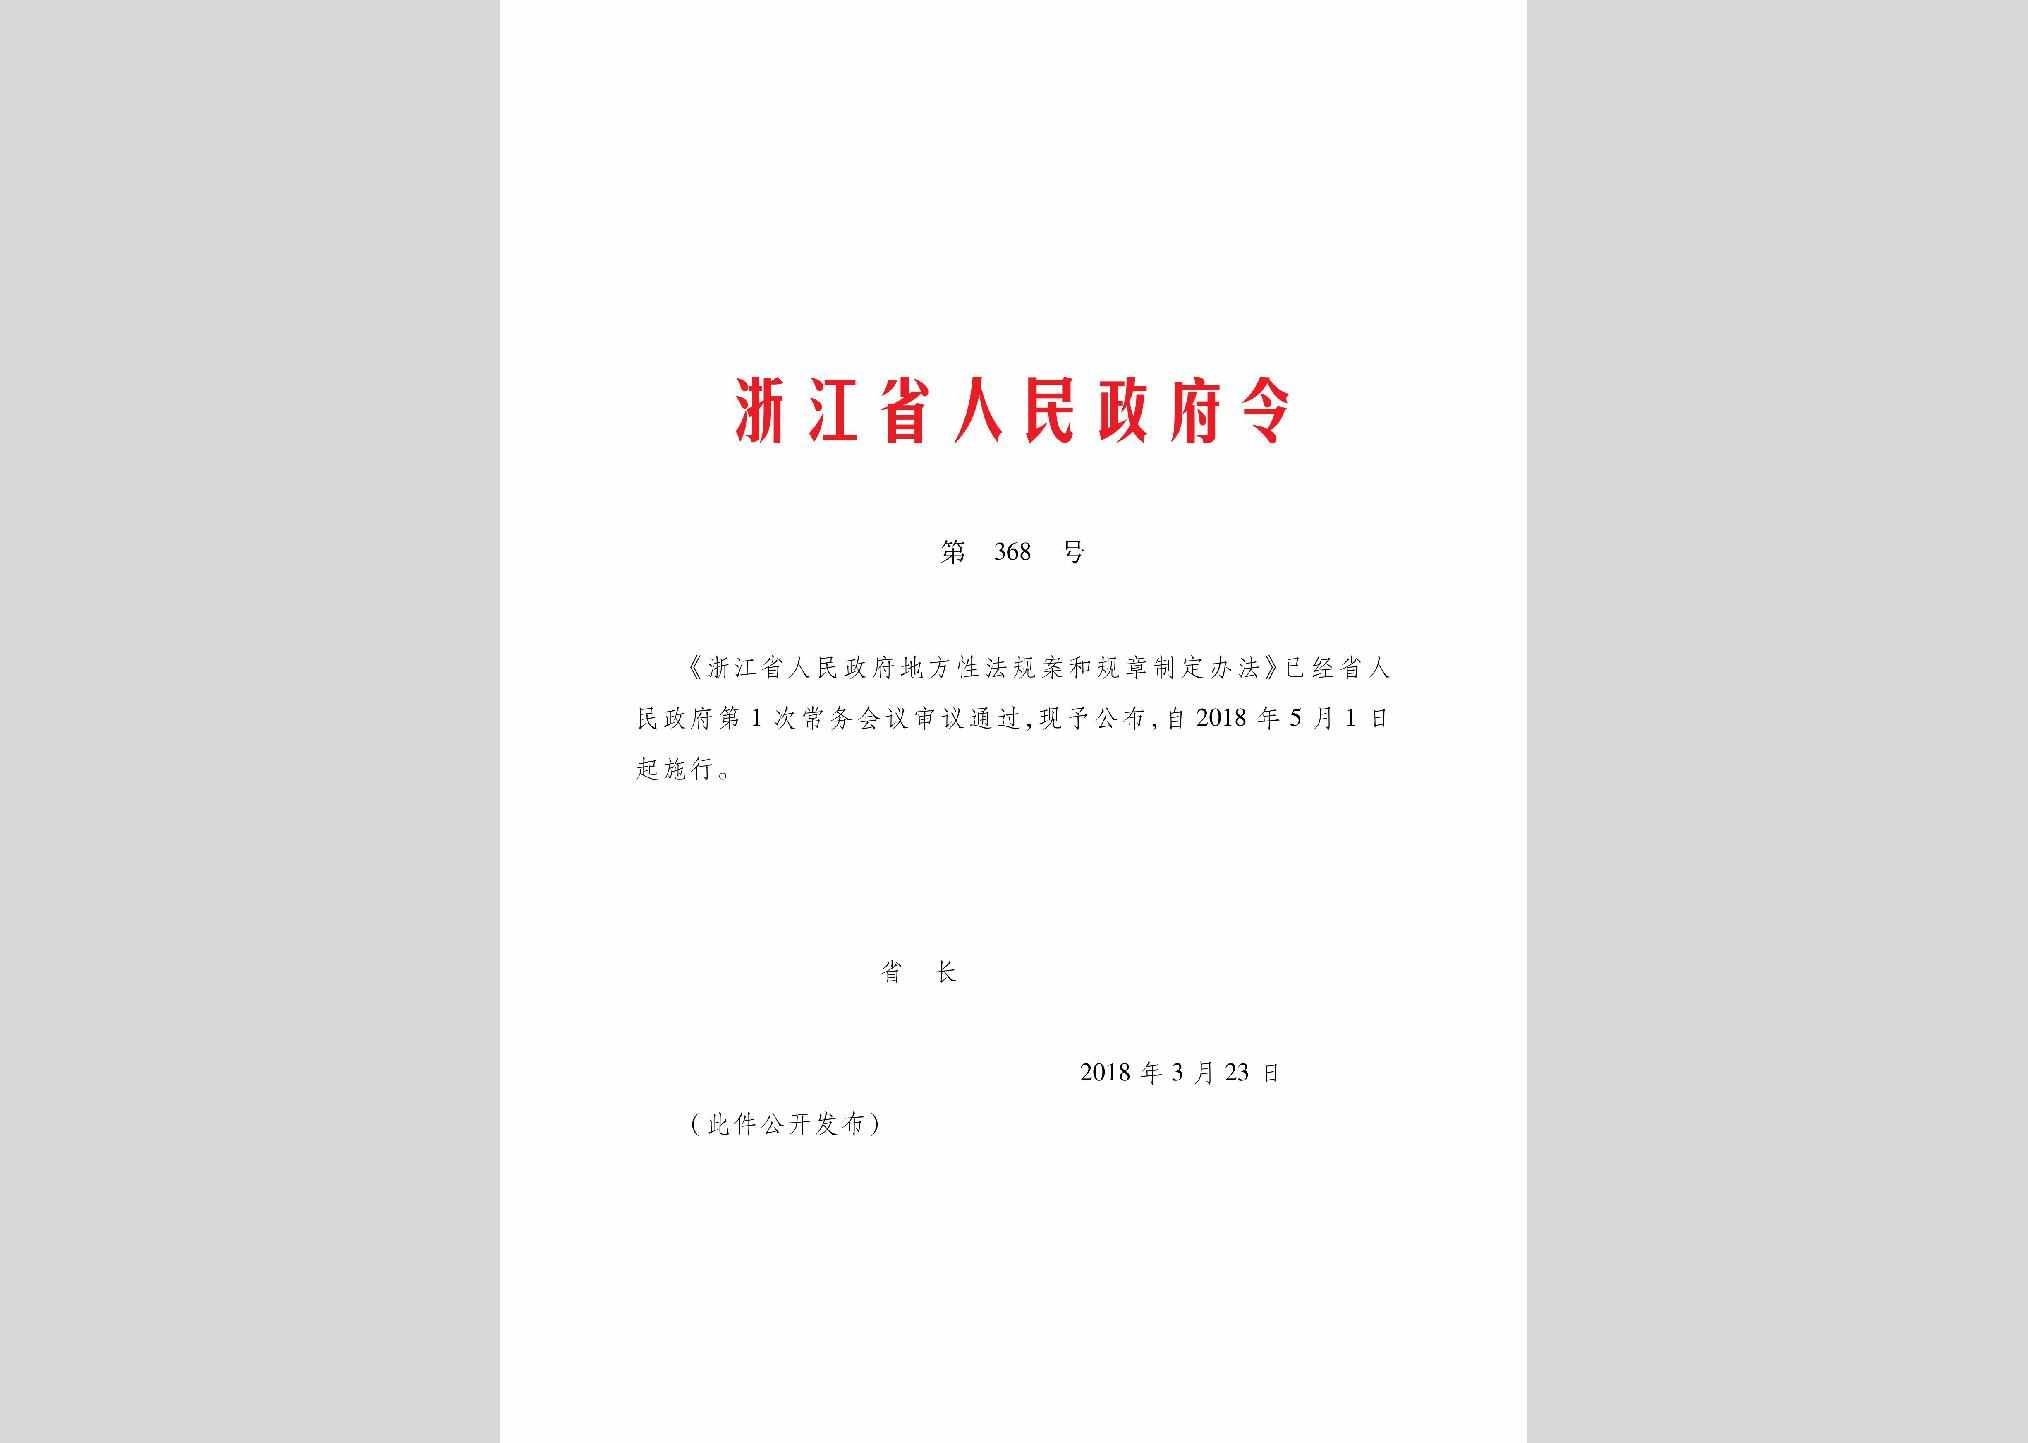 ZJSRMZFL-368-2018：浙江省人民政府地方性法规案和规章制定办法